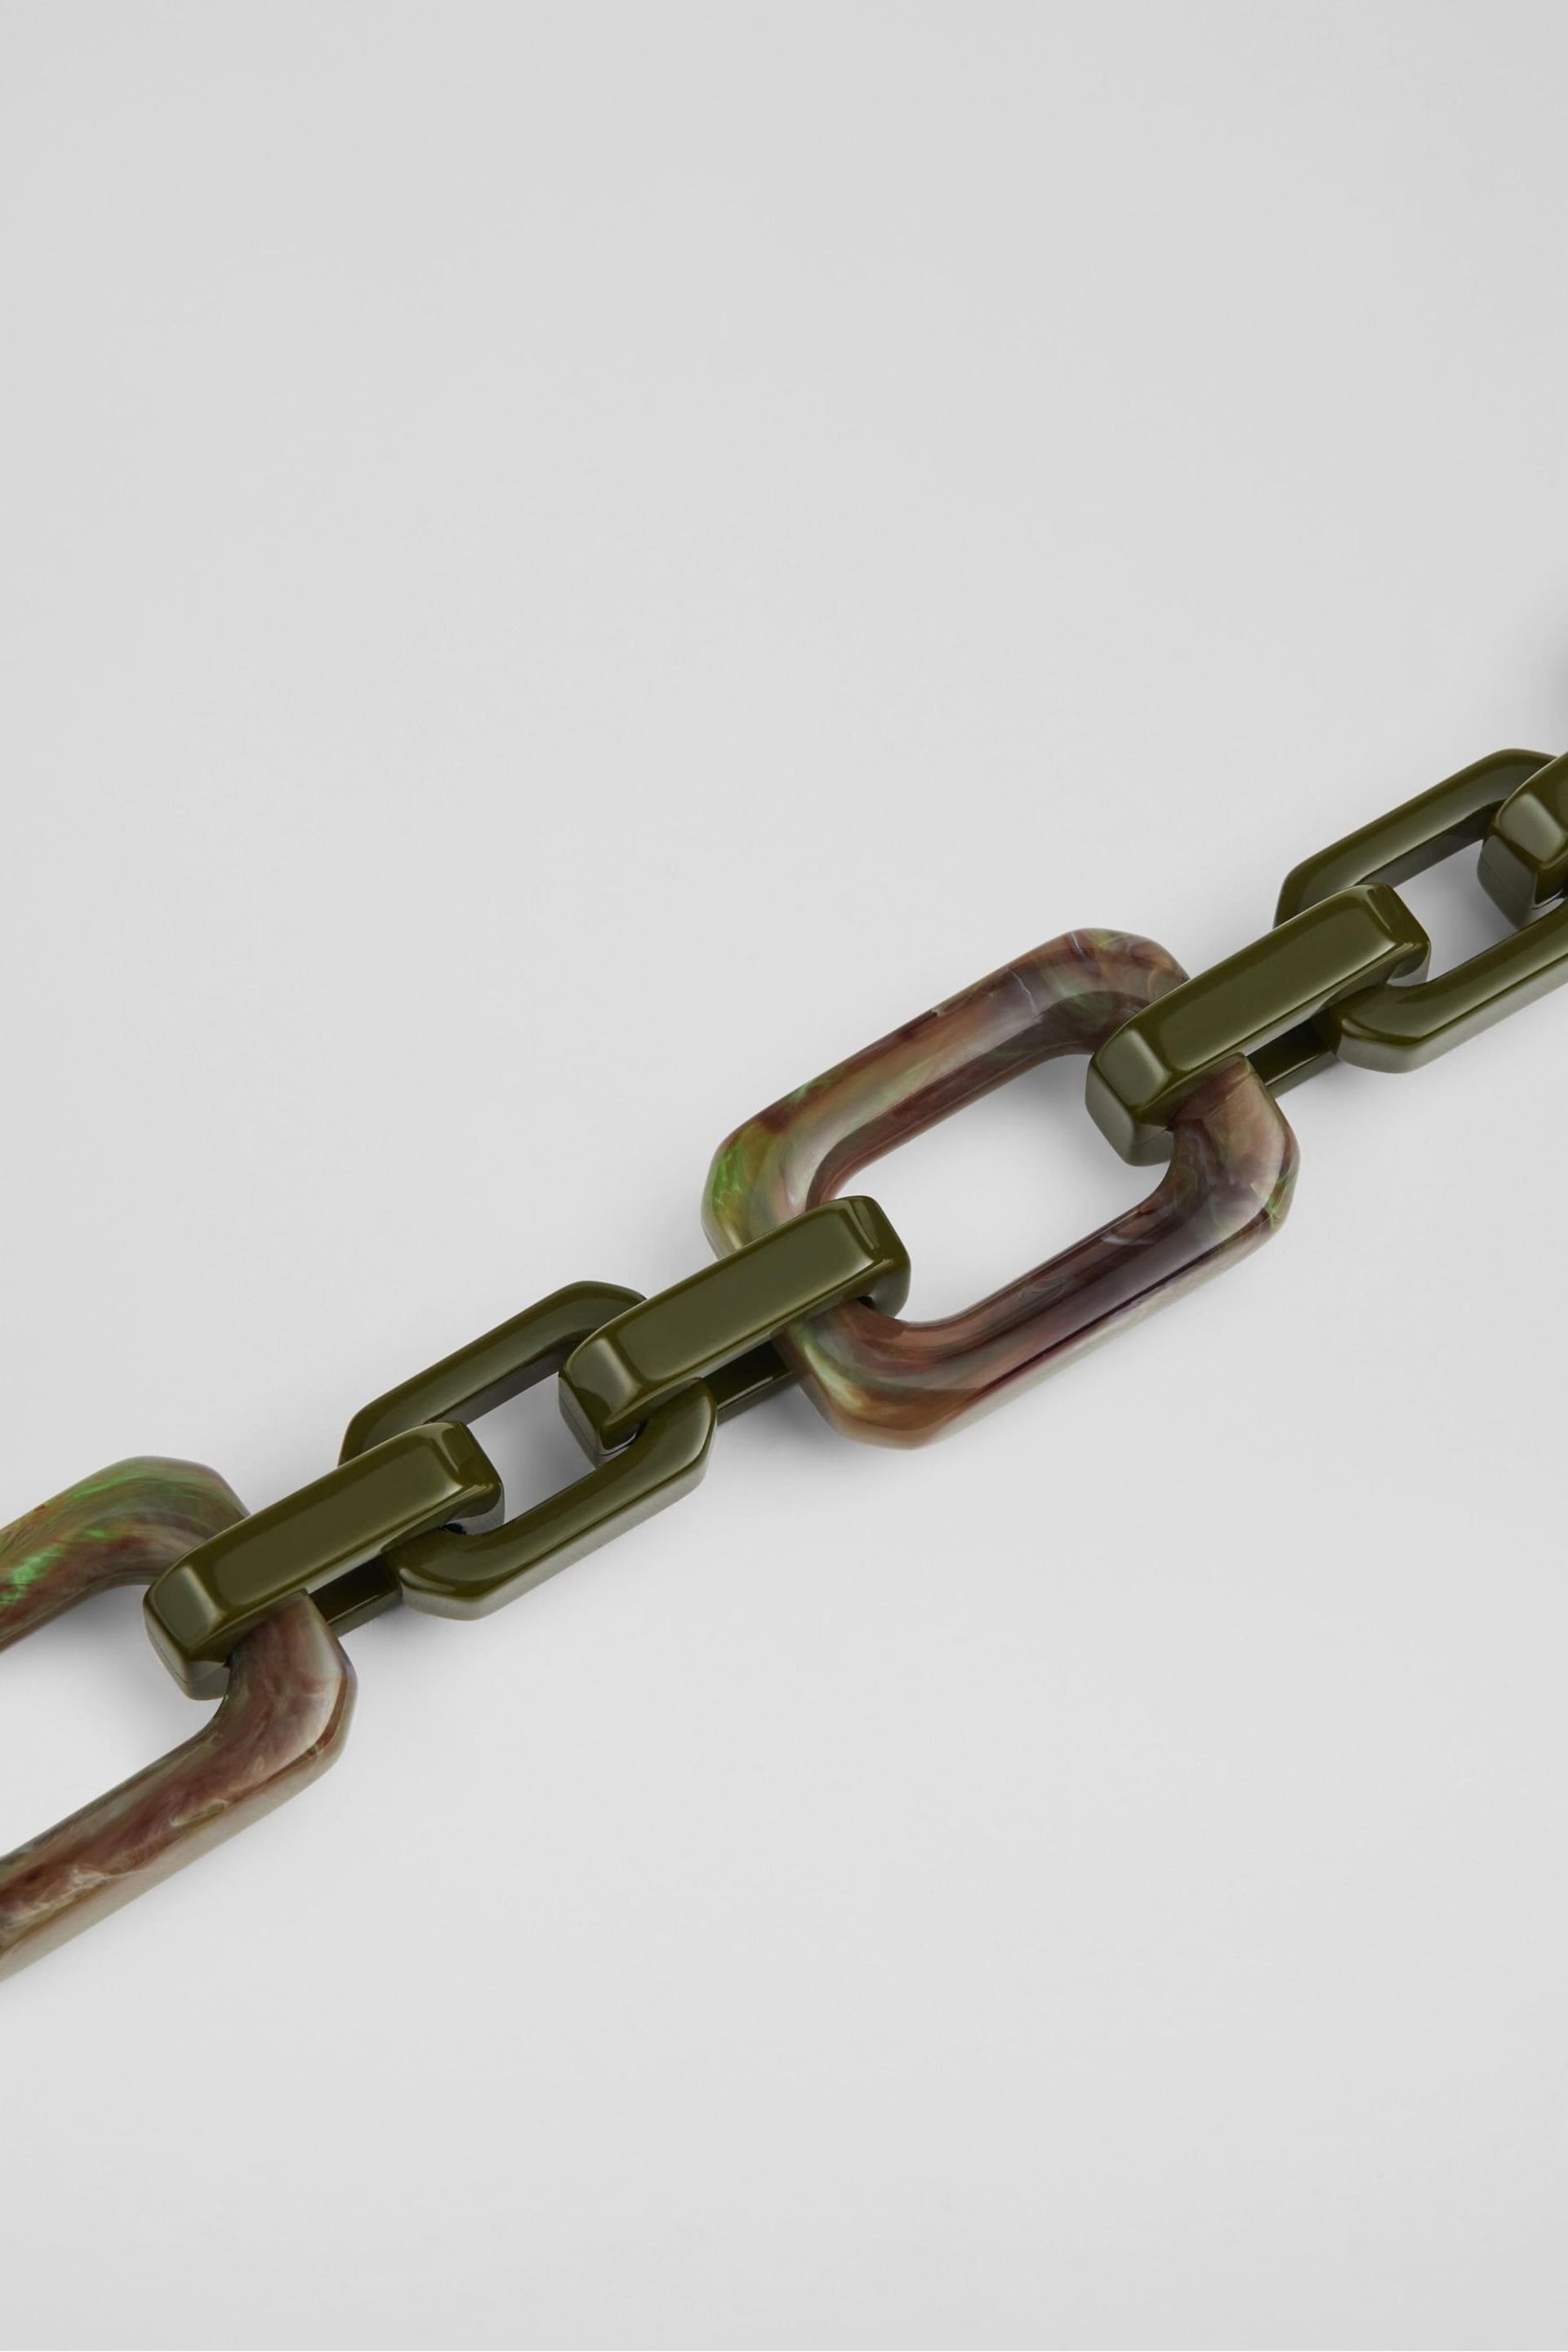 LK Bennett Green Aspen Resin Chain Leather Belt - Image 2 of 2